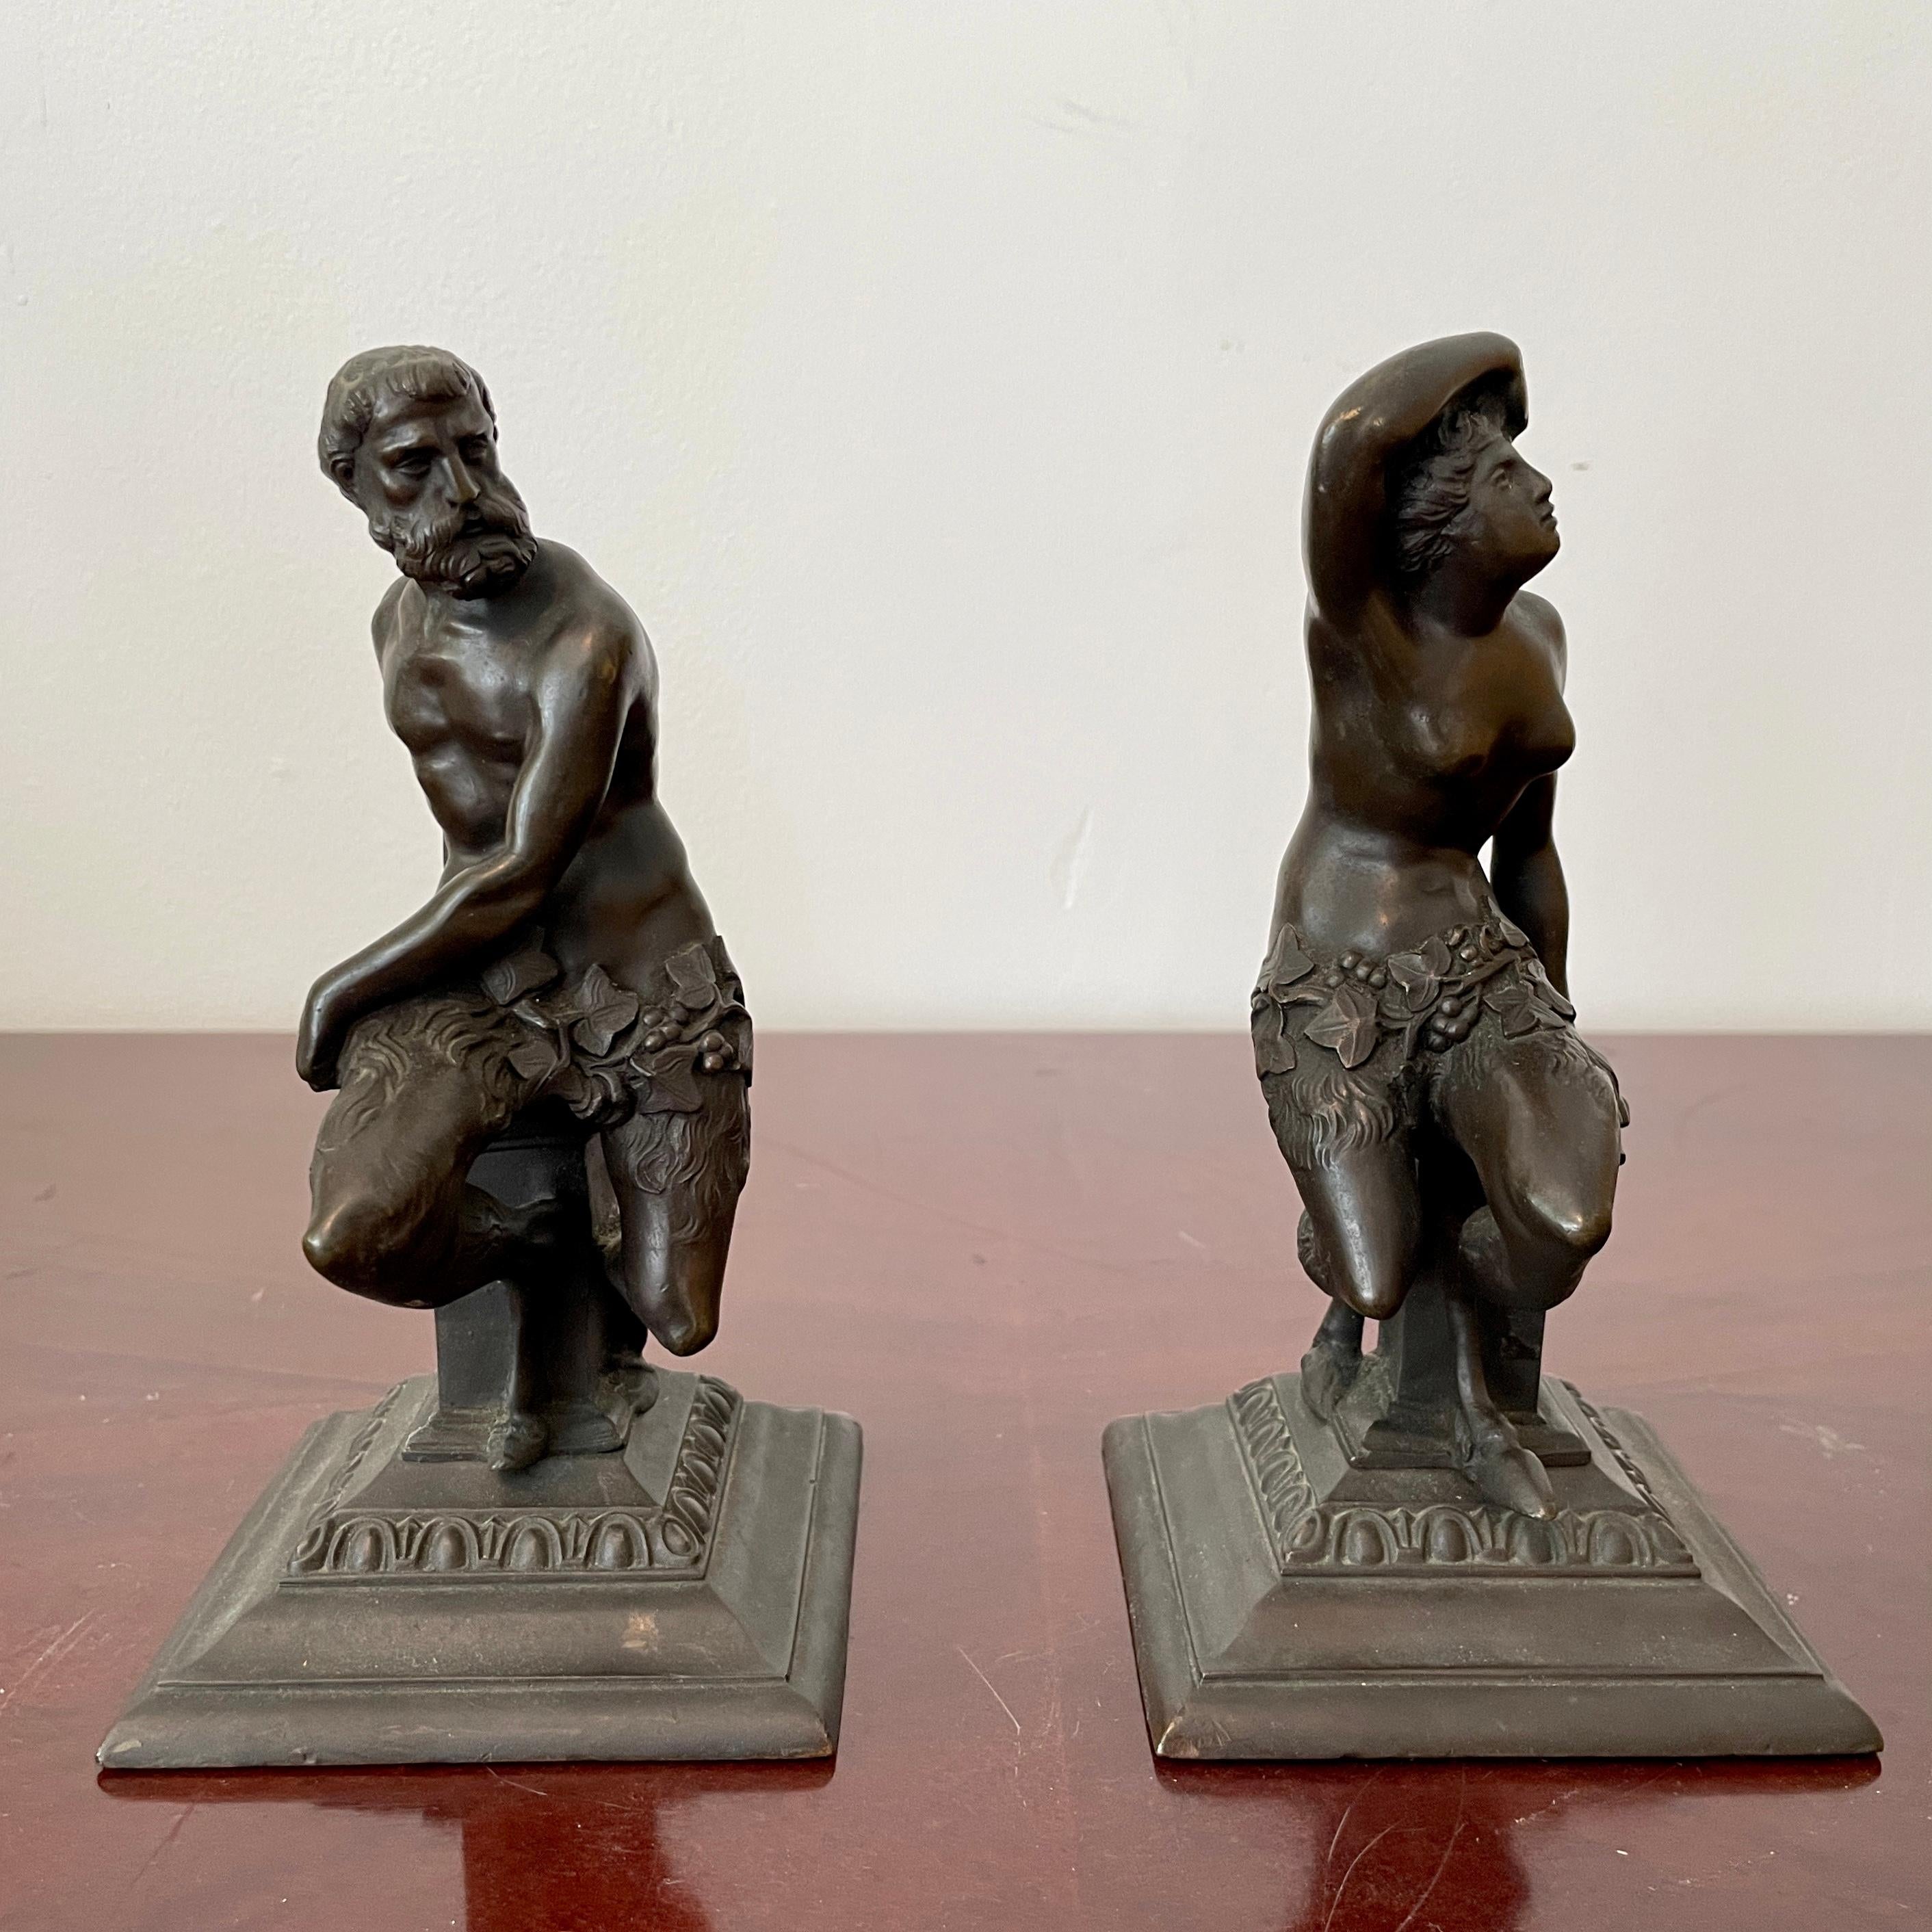 Klassisches Paar von Bronzefiguren eines Mannes und einer Frau. Eine großartige Ergänzung für Ihr klassisch inspiriertes Interieur.